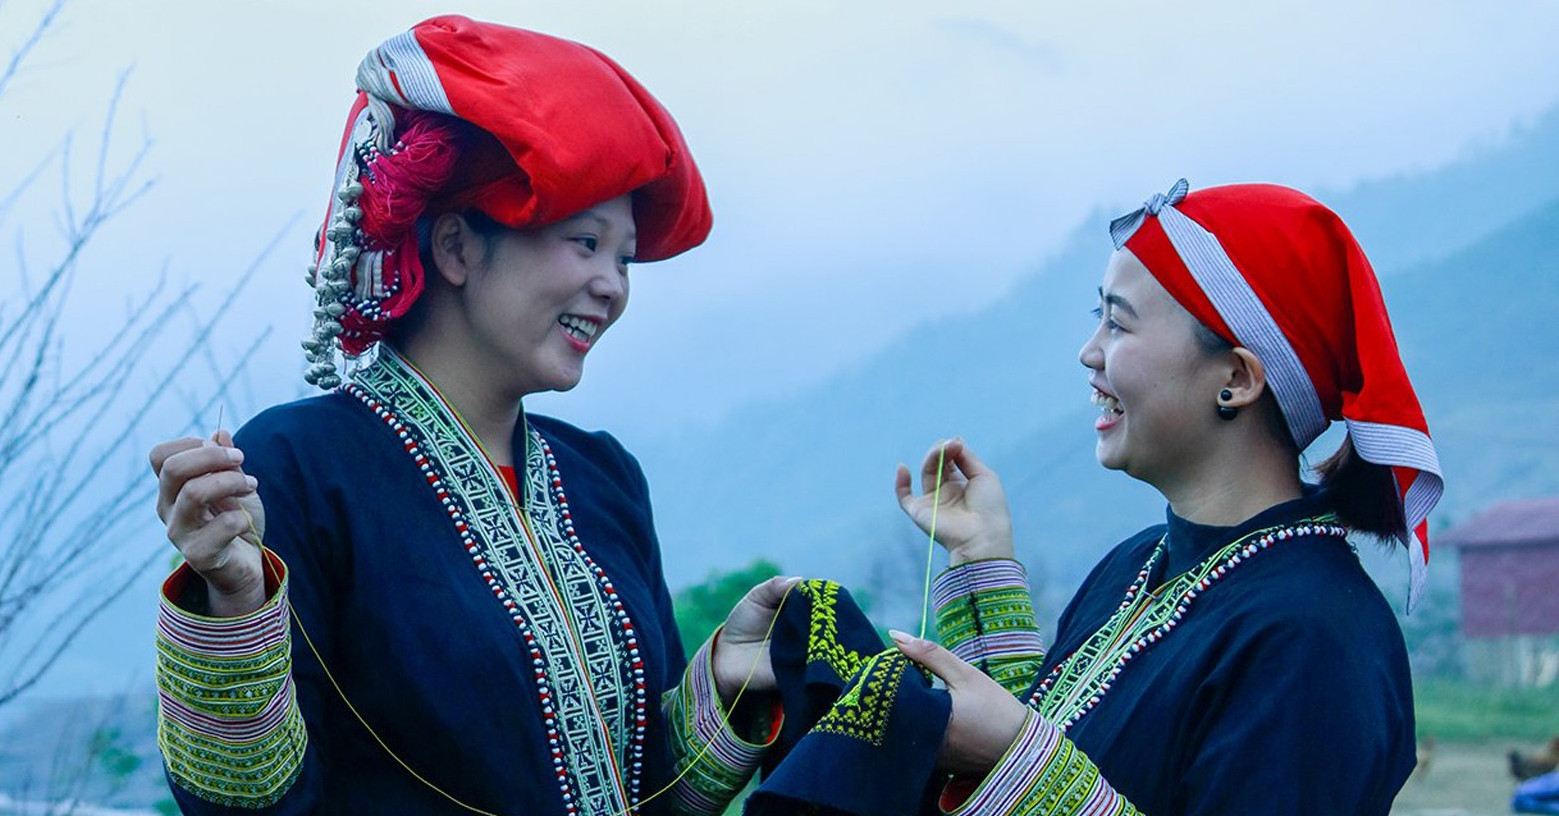 Cô gái người dân tộc Mông xinh đẹp trong điệu múa truyền thống. Ảnh: Phạm Ngọc Bằng